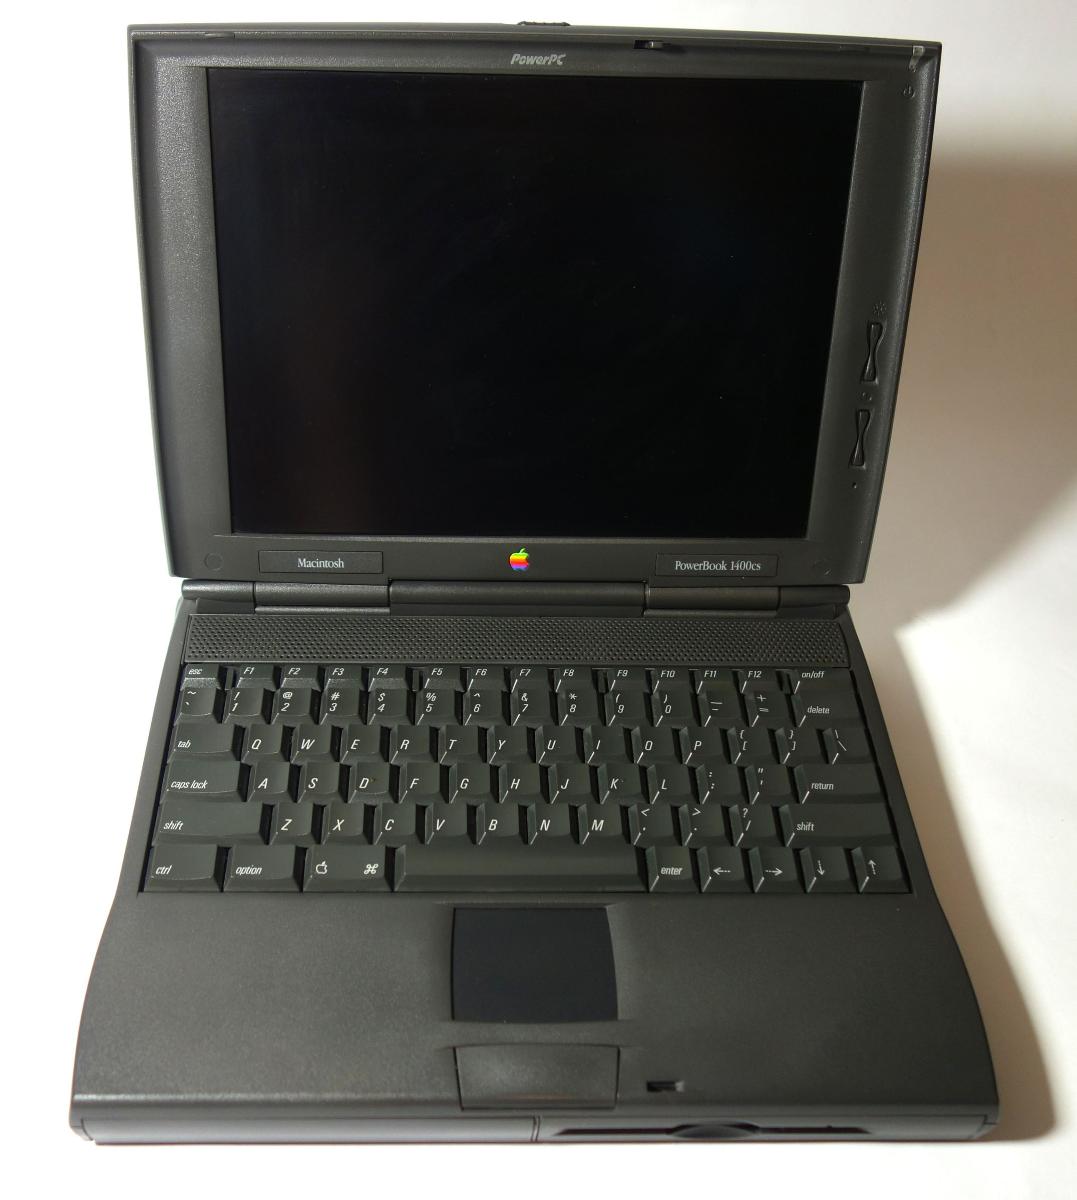 数量限定アウトレット最安価格 Apple PowerBook 1400cs